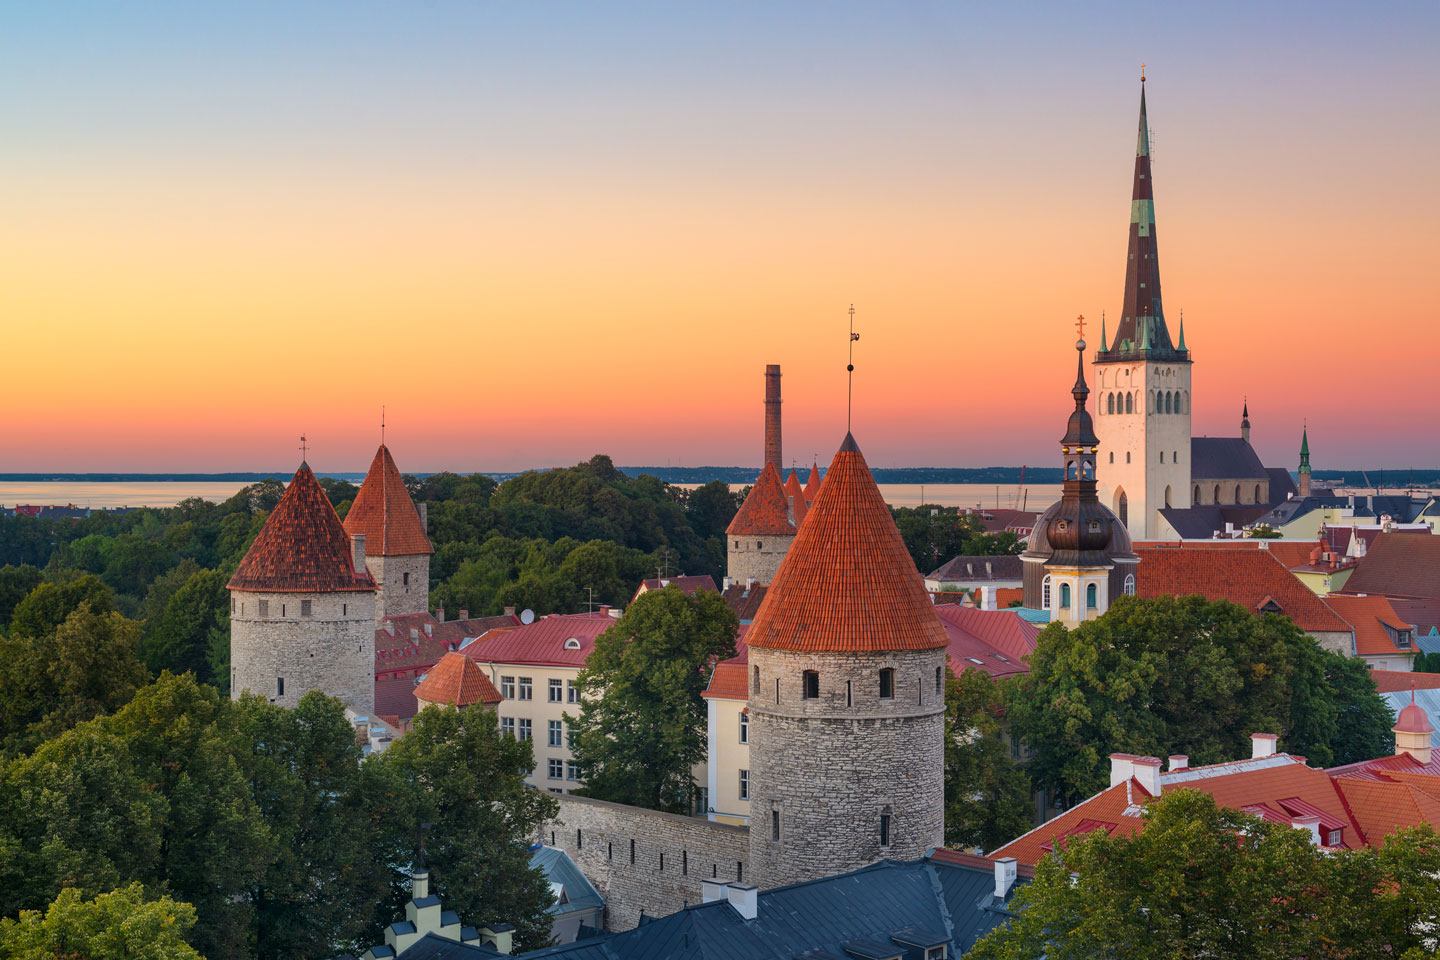 # Tallinn Old Town